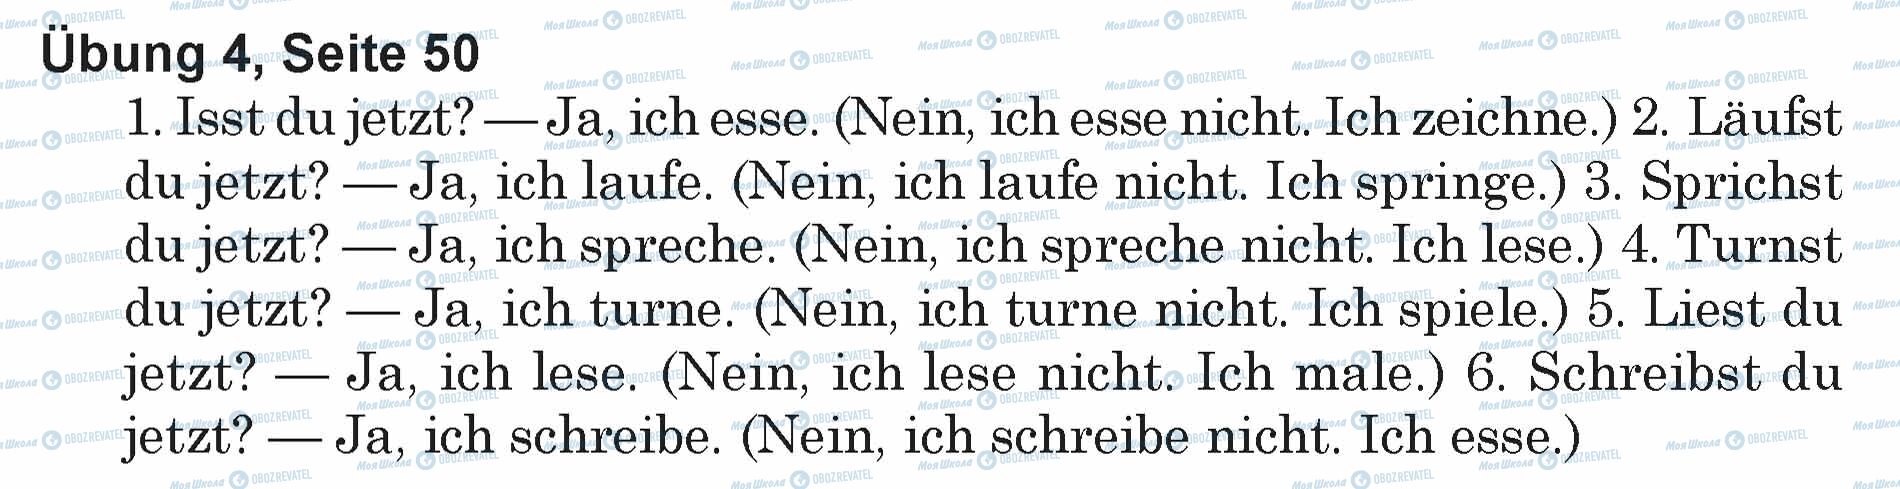 ГДЗ Німецька мова 5 клас сторінка Ubung 4, Seite 50